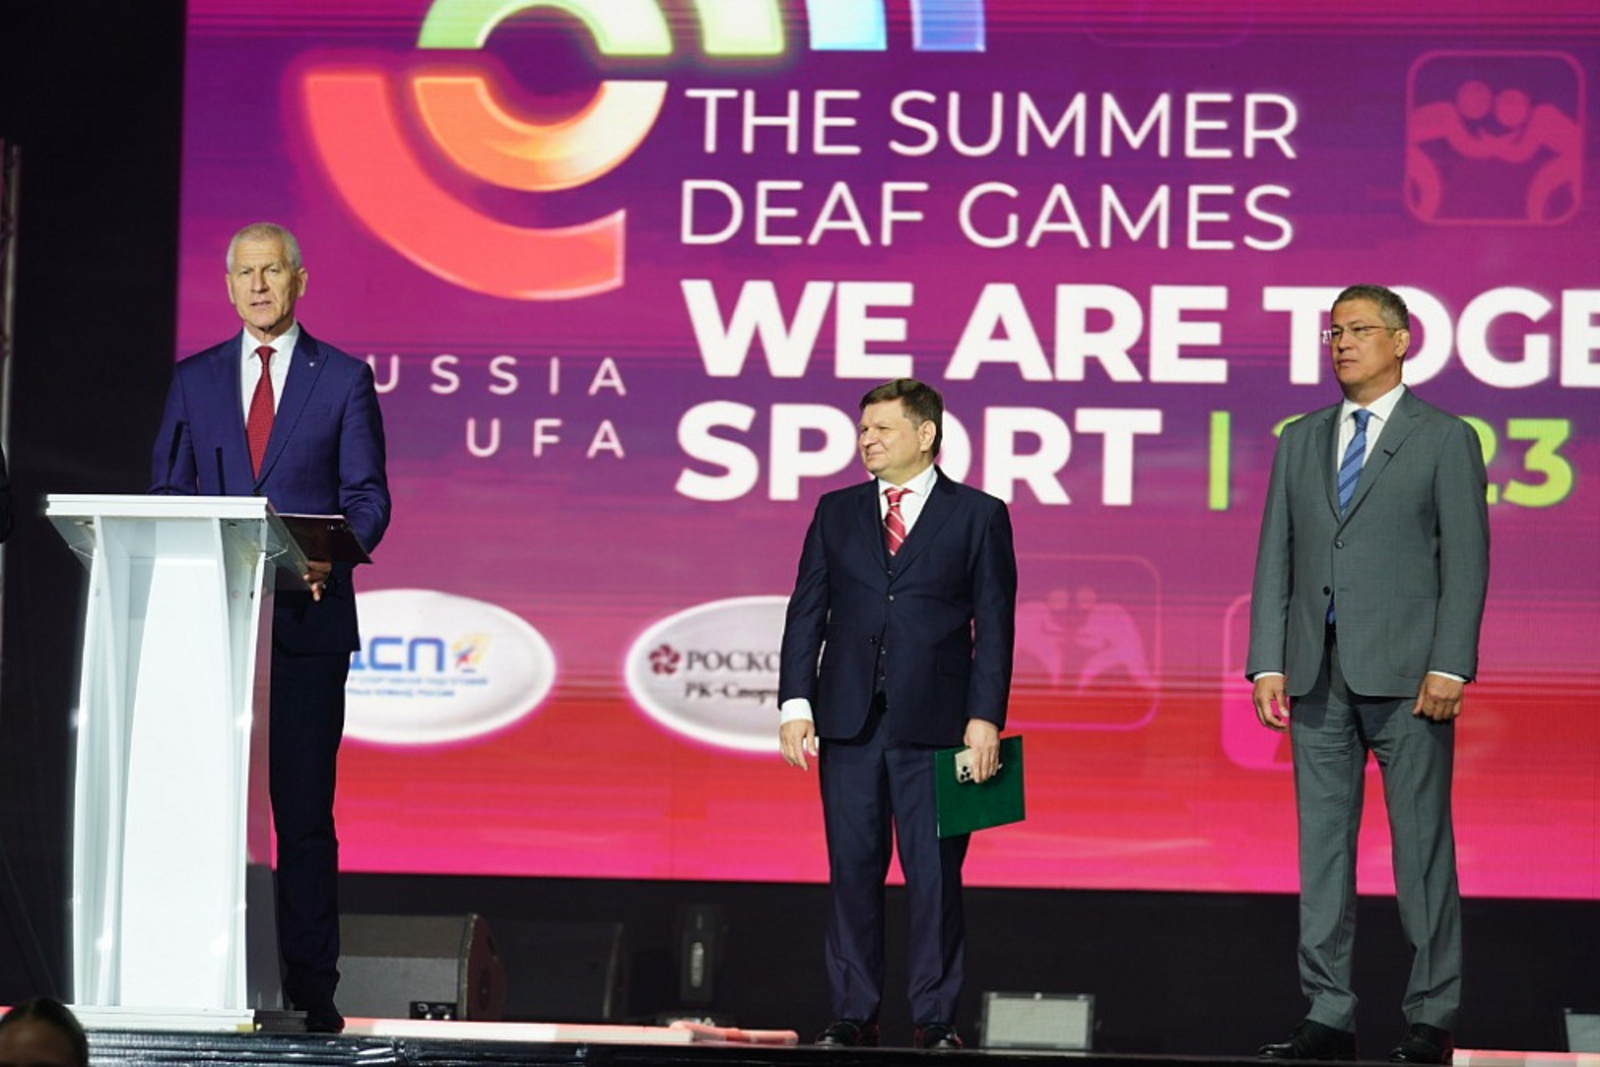 Радий Хабиров, пост: Сегодня открыли в Уфе Летние Игры Сурдлимпийцев